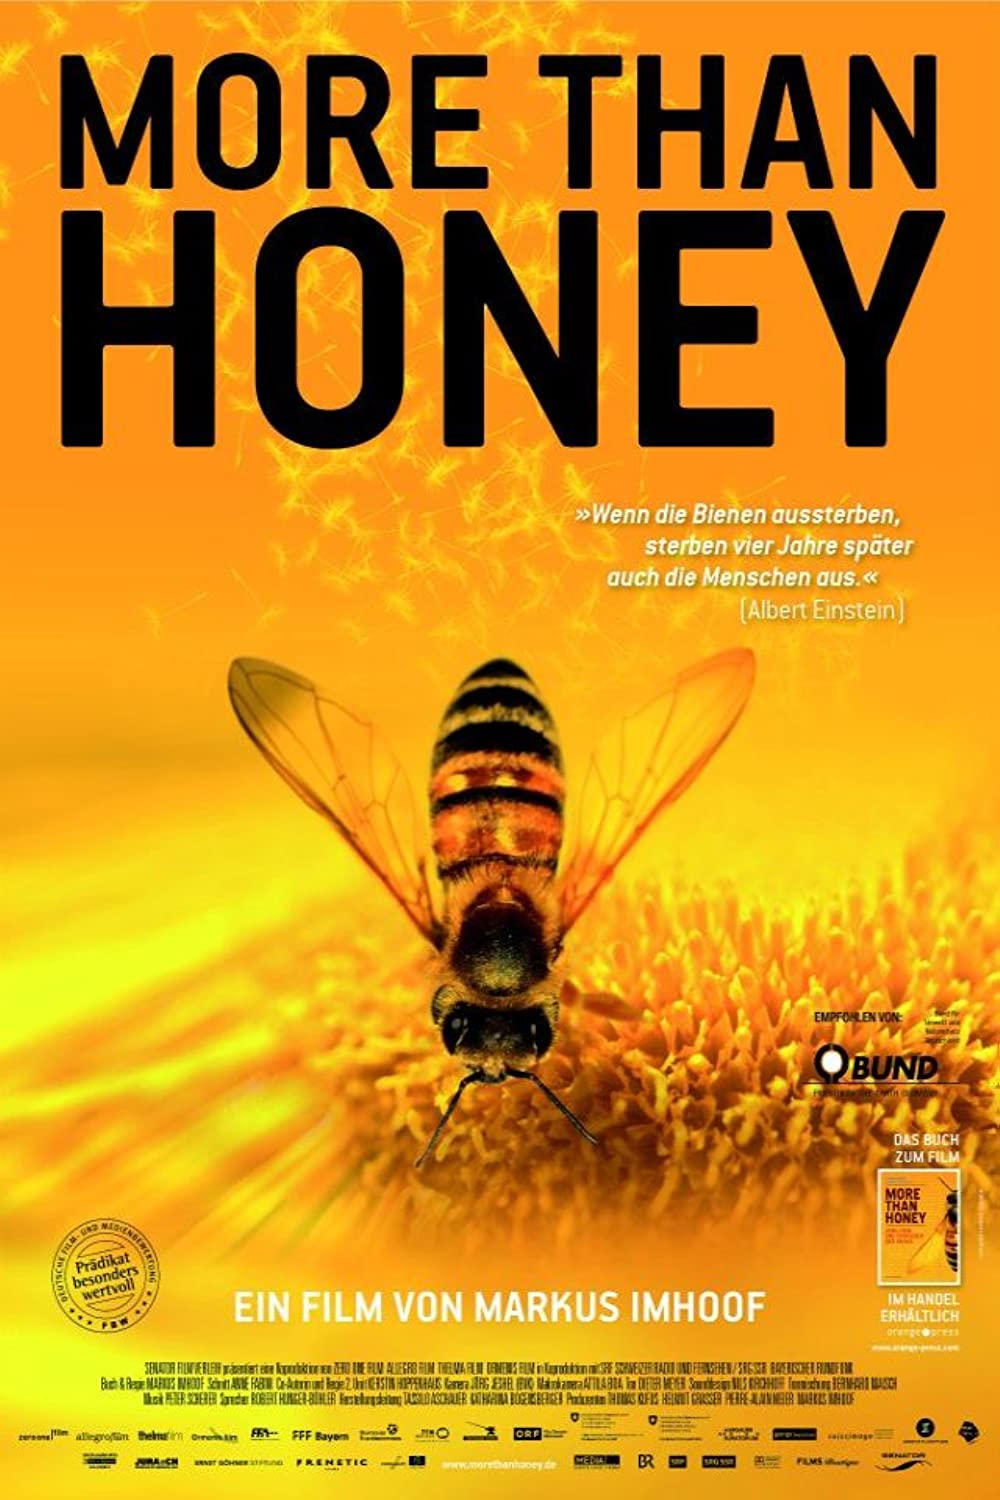 Filmbeschreibung zu More than Honey